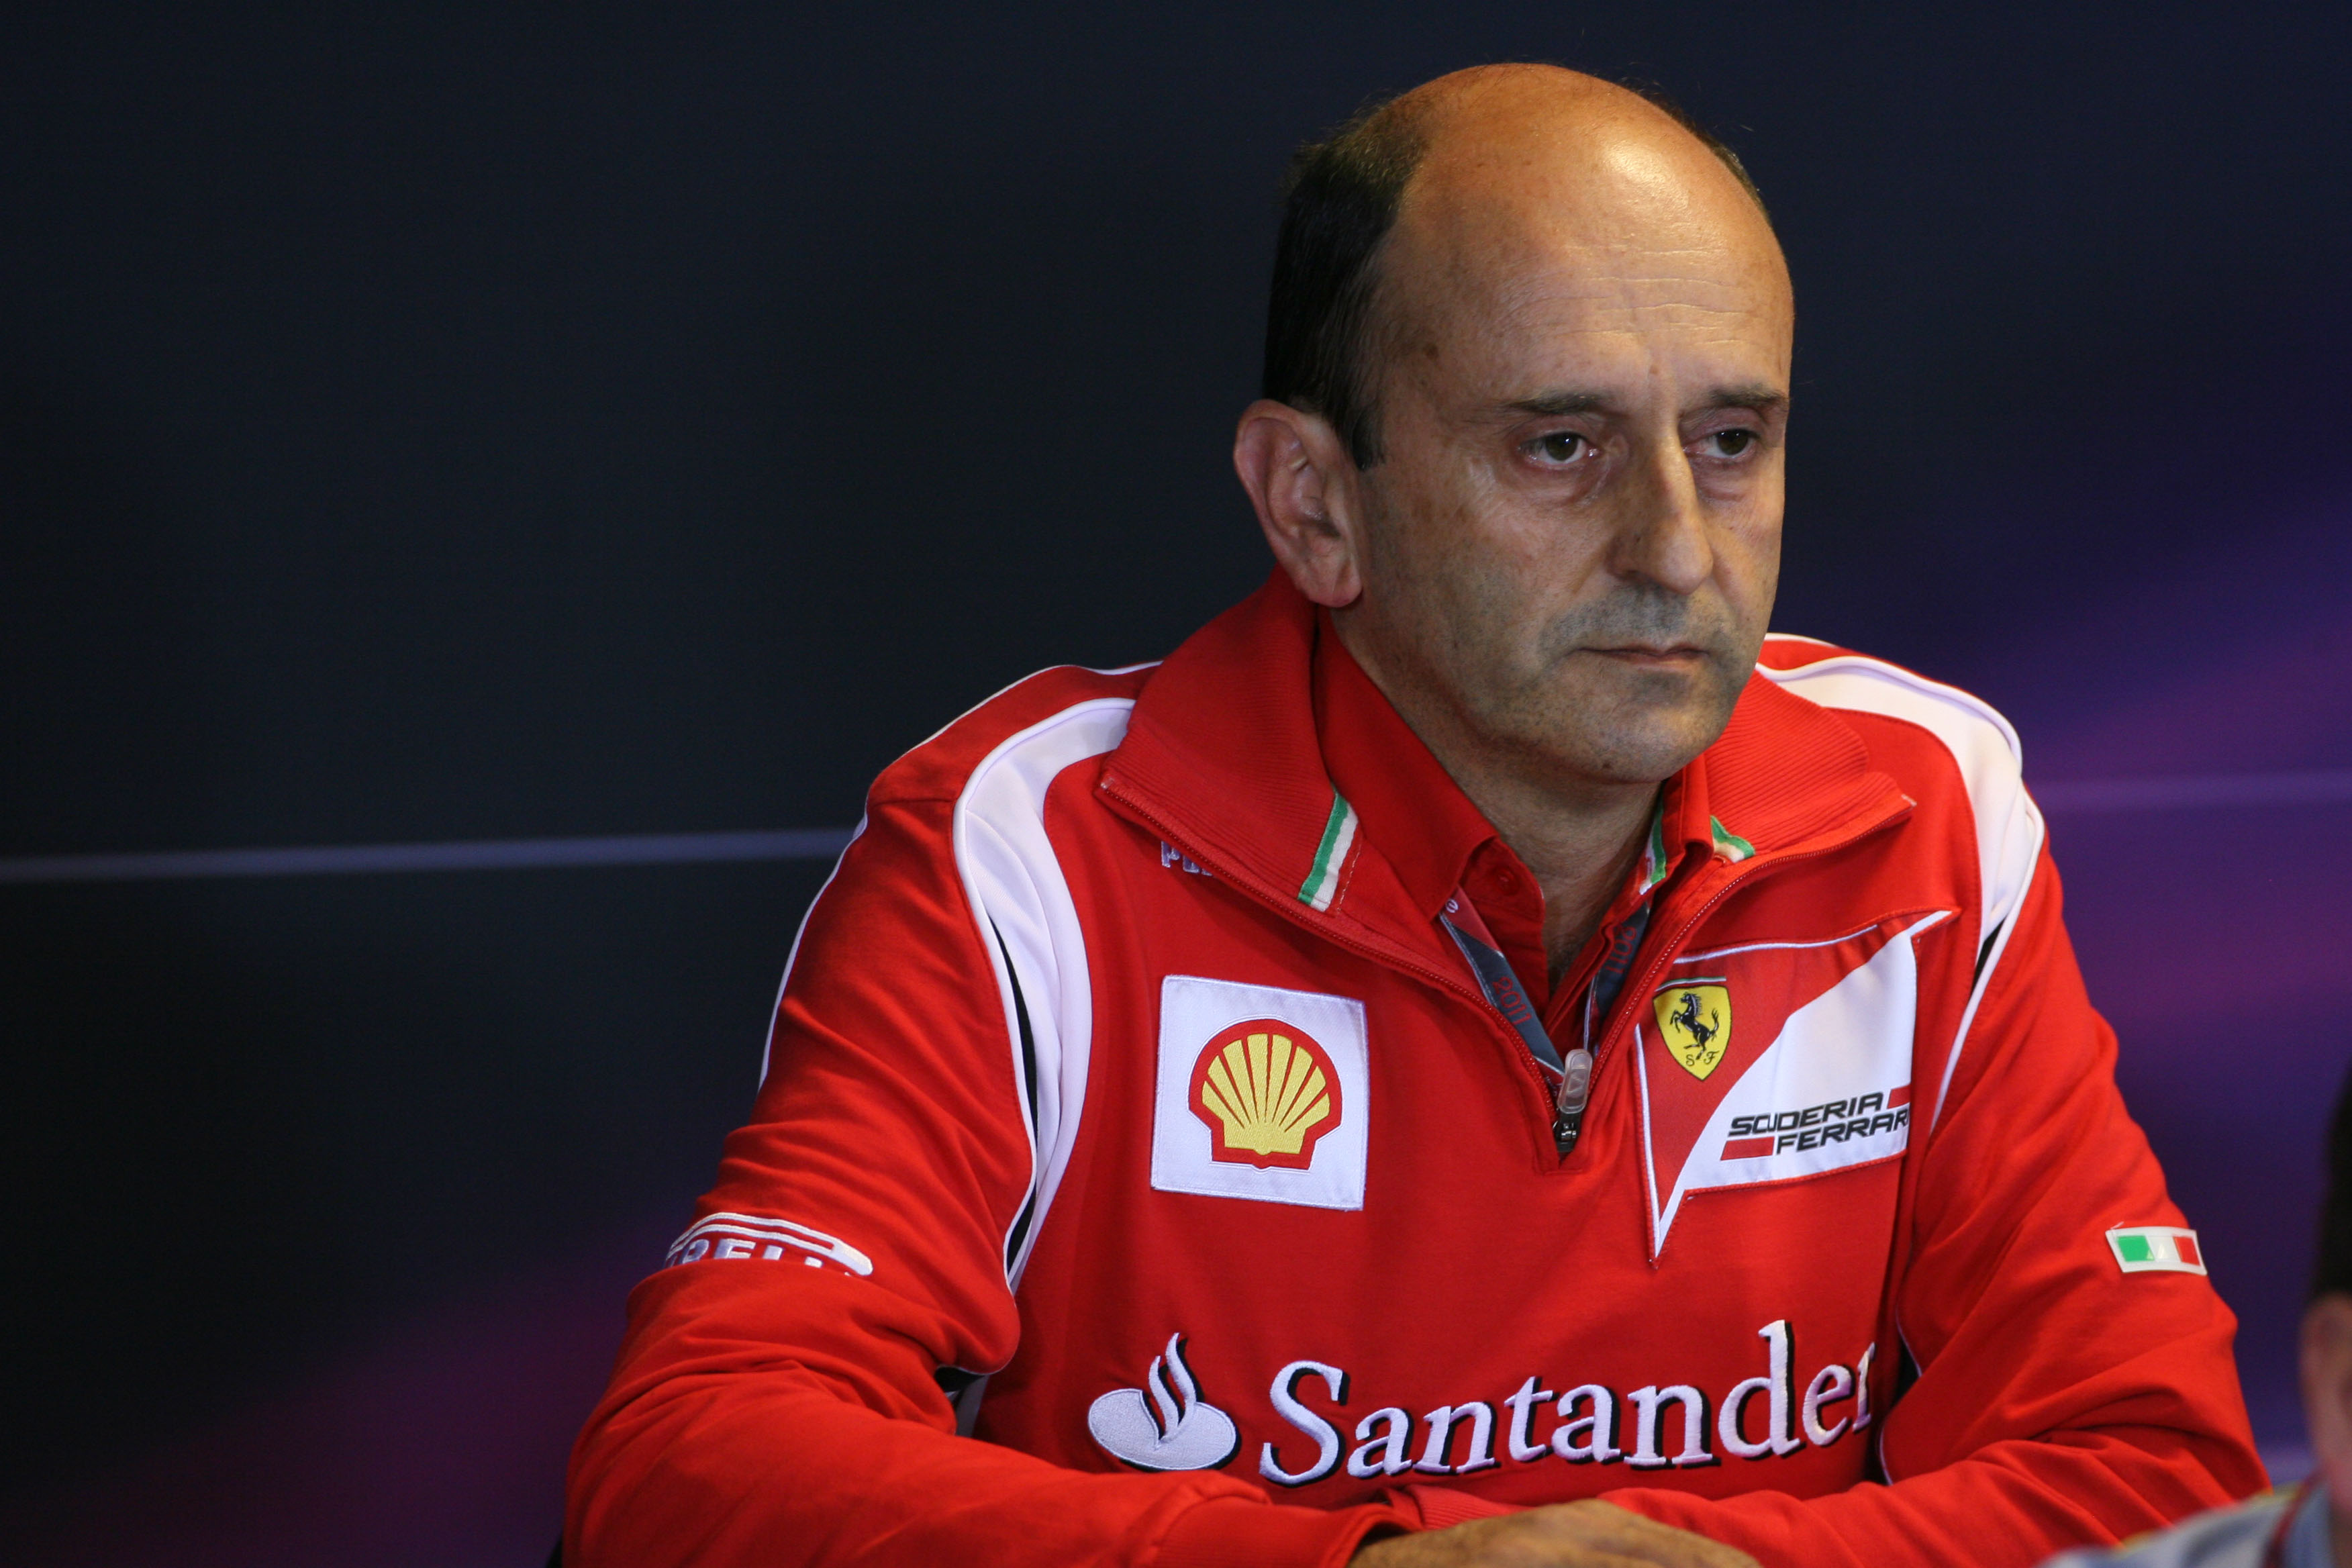 Ferrari ligt op koers met 2014-motor